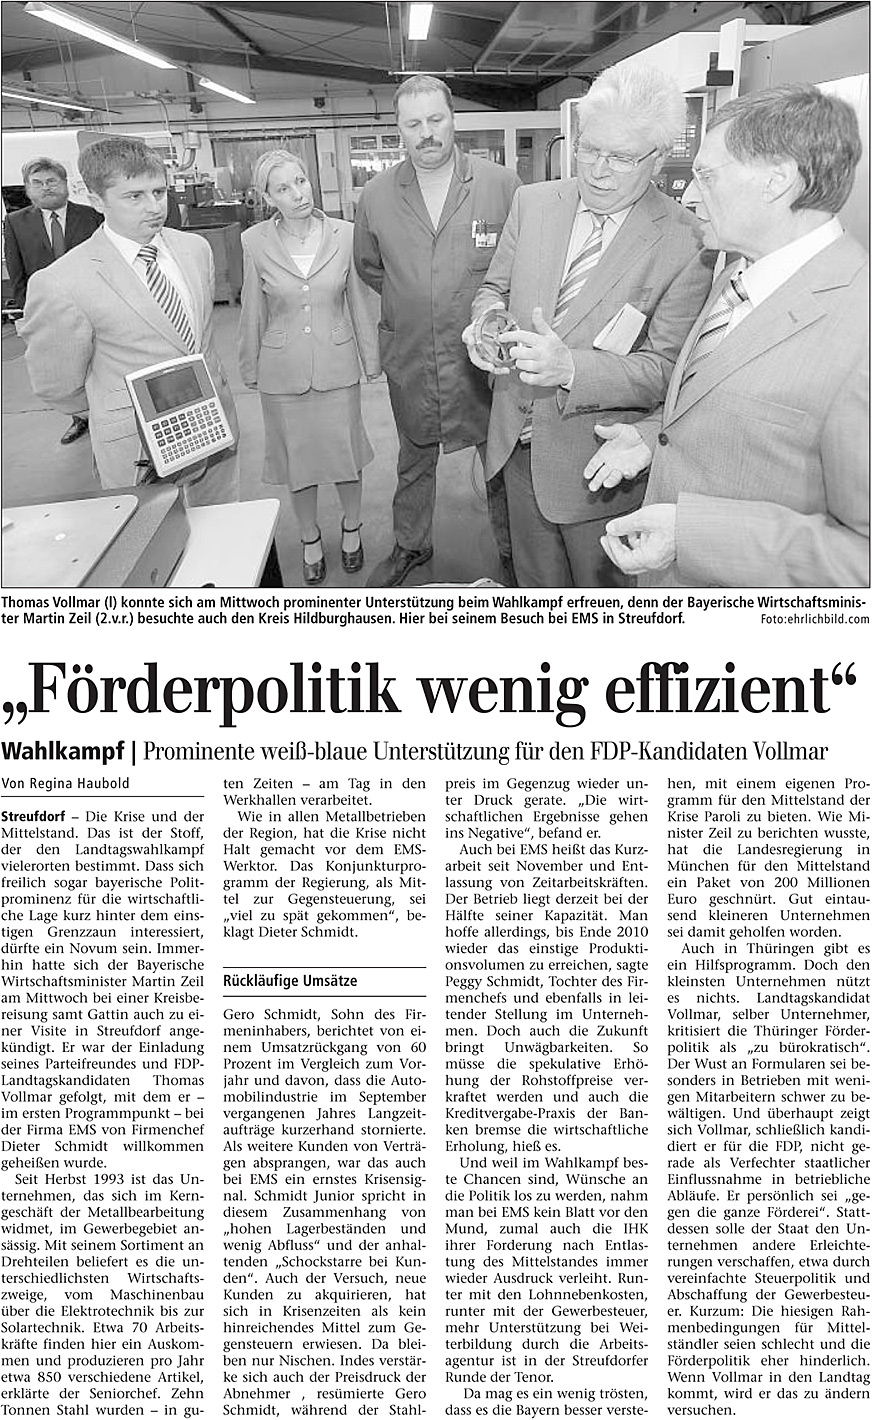 August 2009 – Zeitungsartikel in “Freies Wort” Förderpolitik wenig effizient